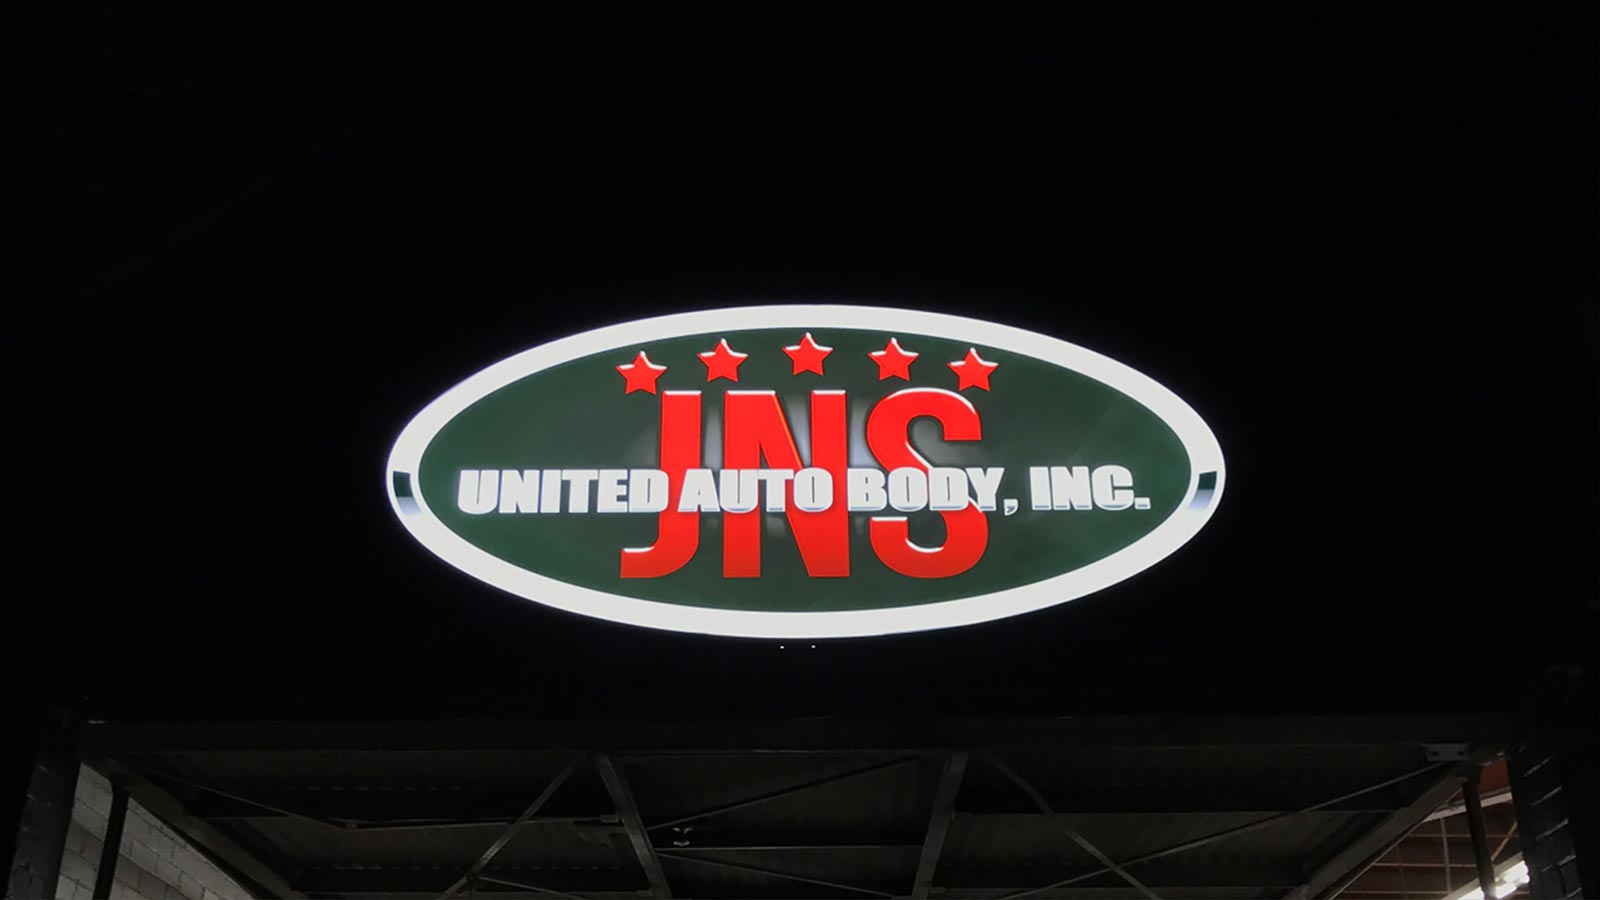 jns illuminated lightbox sign at night